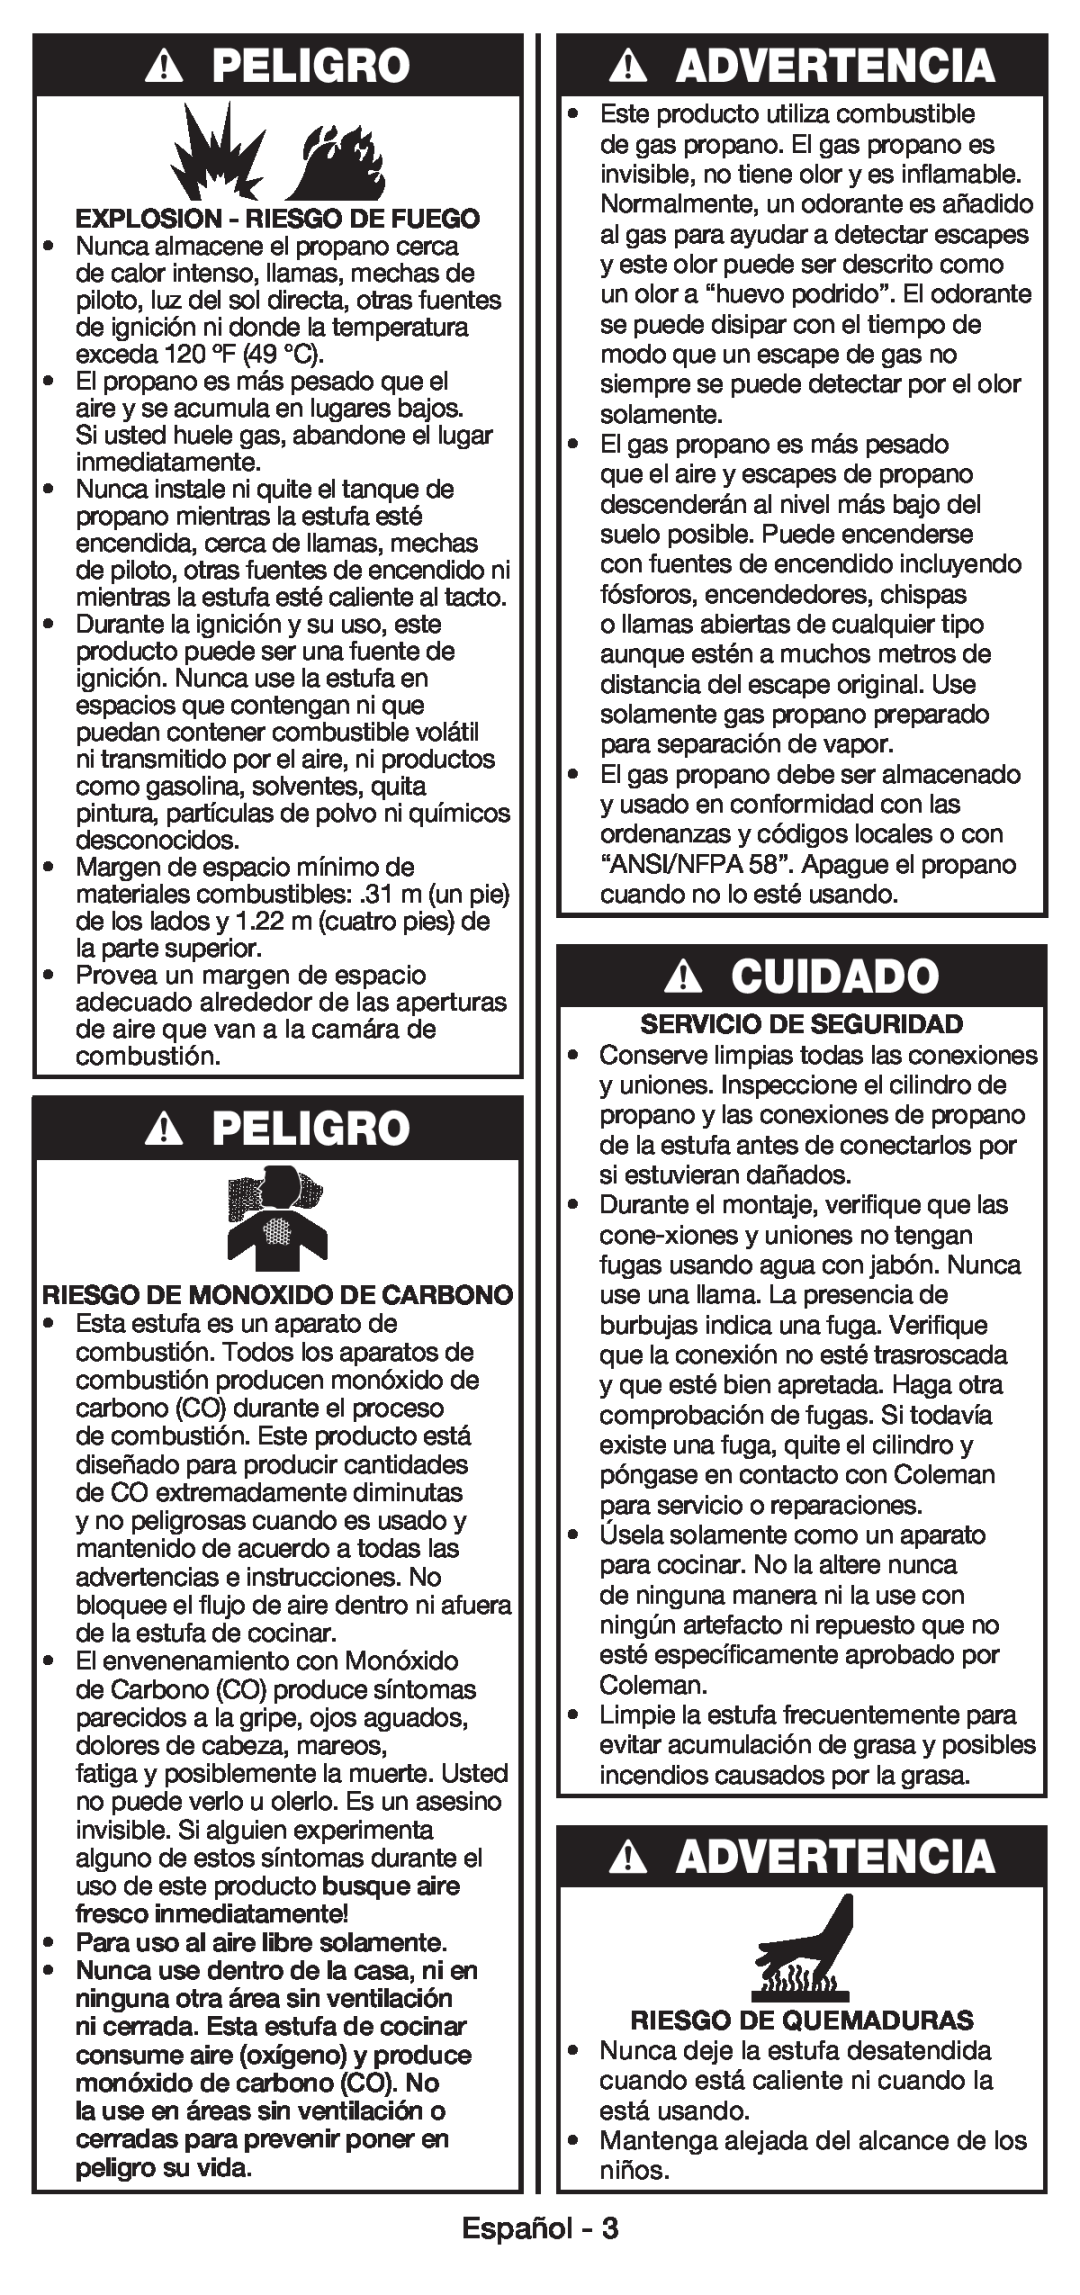 Coleman 5430E manual Peligro, Advertencia, Cuidado, Español, Explosion - Riesgo De Fuego, Riesgo De Monoxido De Carbono 